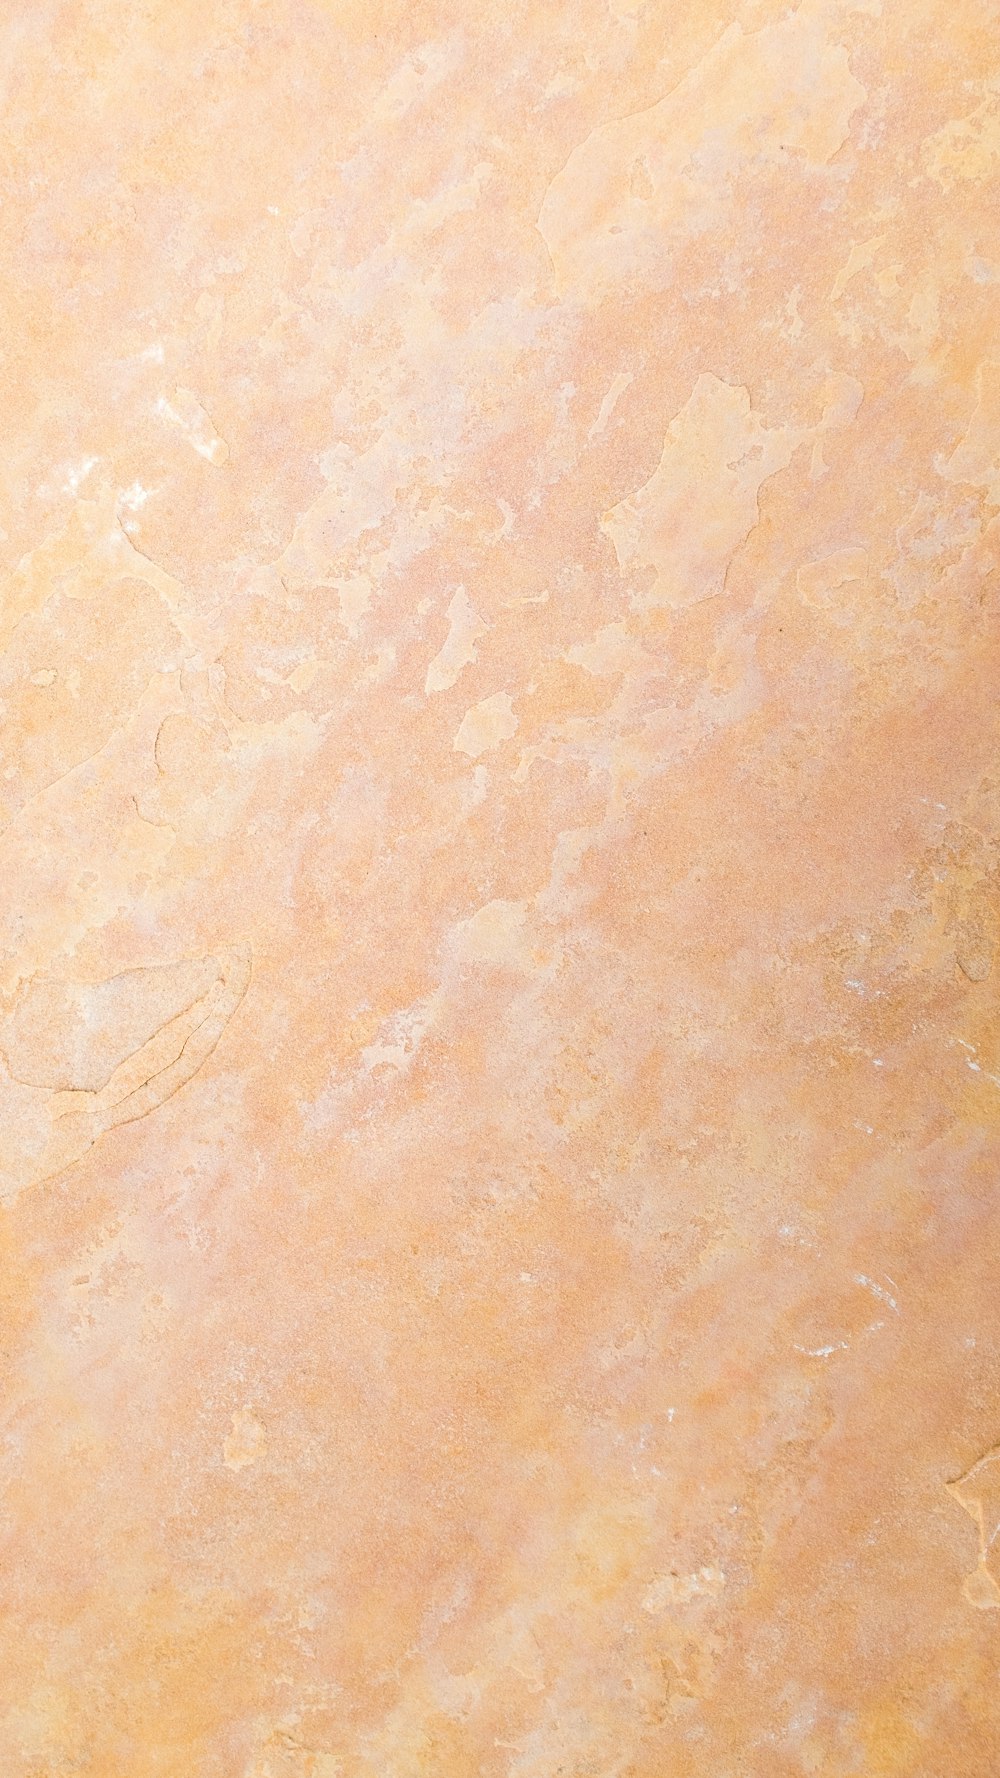 オレンジと黄色の大理石のテクスチャ背景